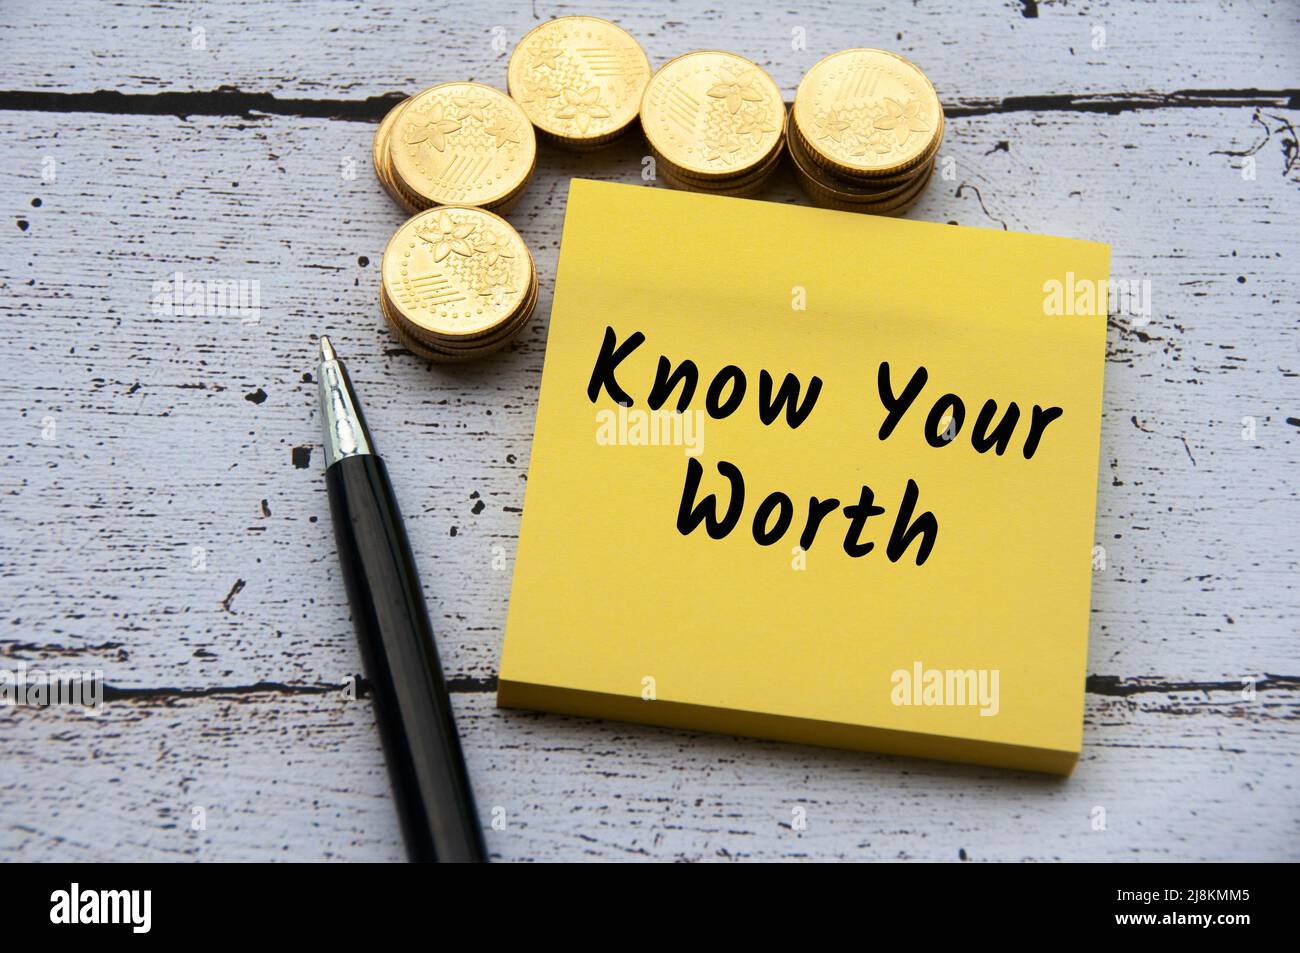 Virgolette ispiratrici e motivazionali - conosci il tuo testo degno su un blocco note giallo. Con monete d'oro e sfondo a penna. Foto Stock